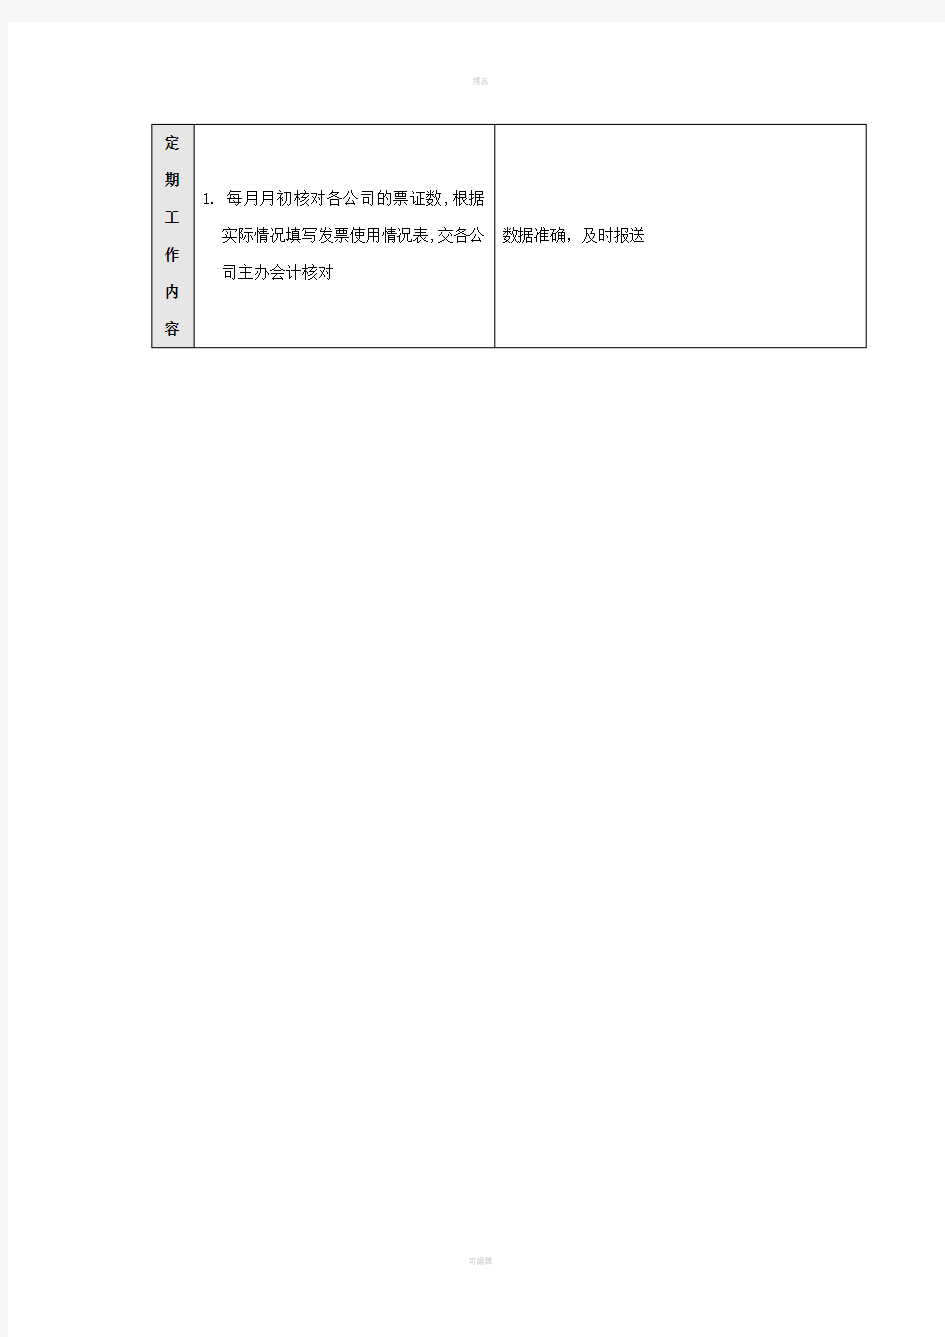 碧桂园财务部绩效考核制度之图章管理员岗位流程表